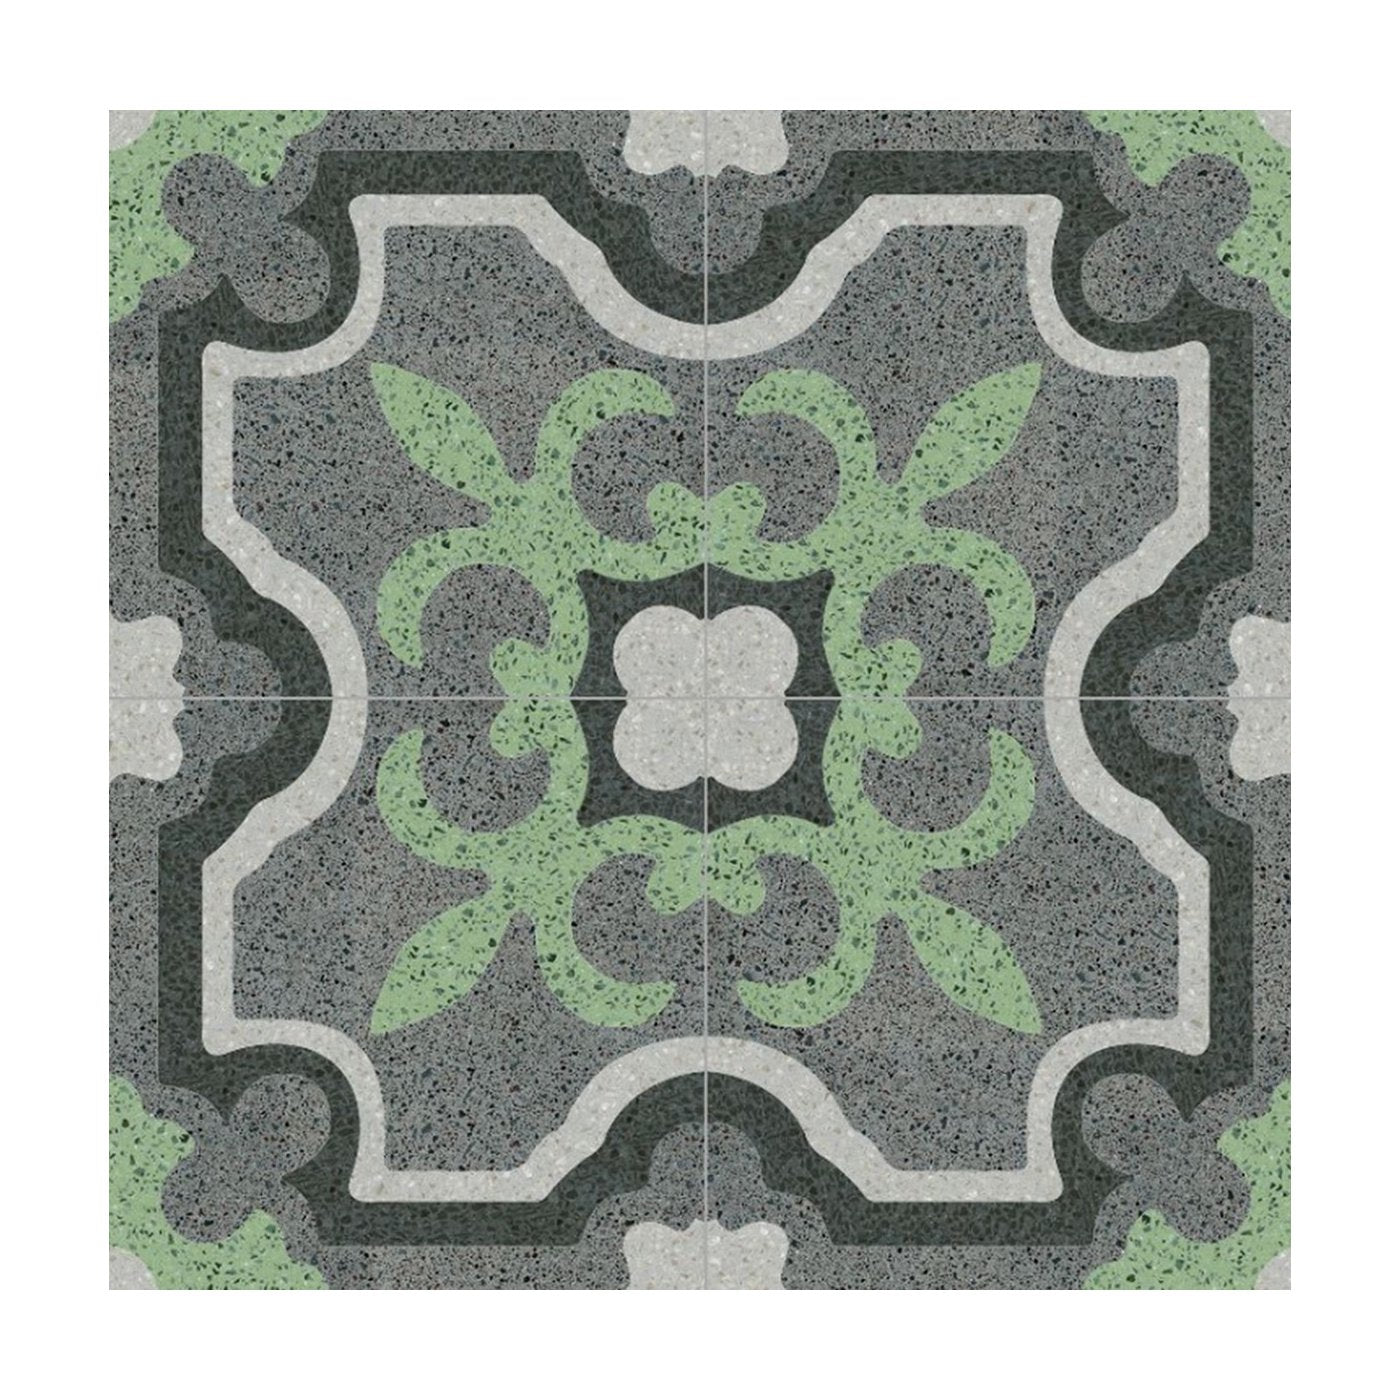 Versus Set of 25 Terrazzo Tiles - Main view